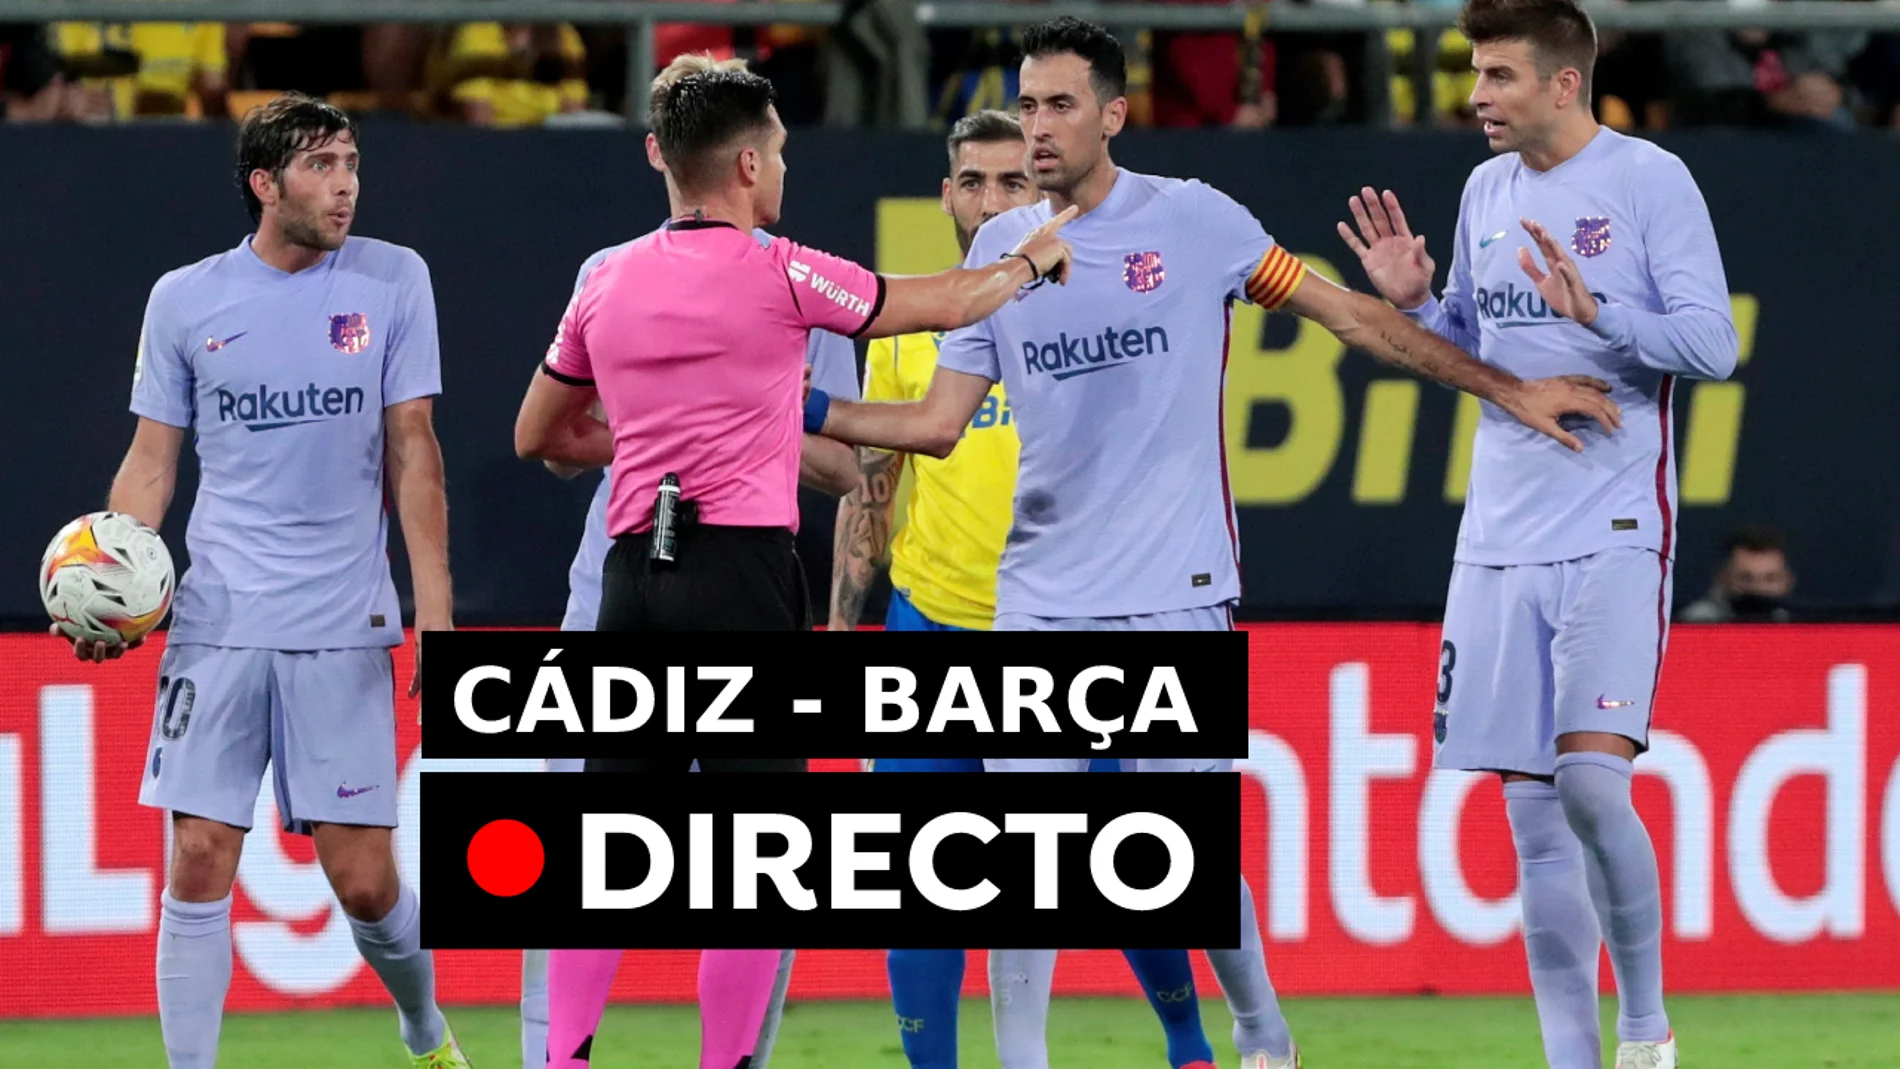 Fútbol hoy: Cádiz - Barcelona hoy en directo por la Liga Santander 2021